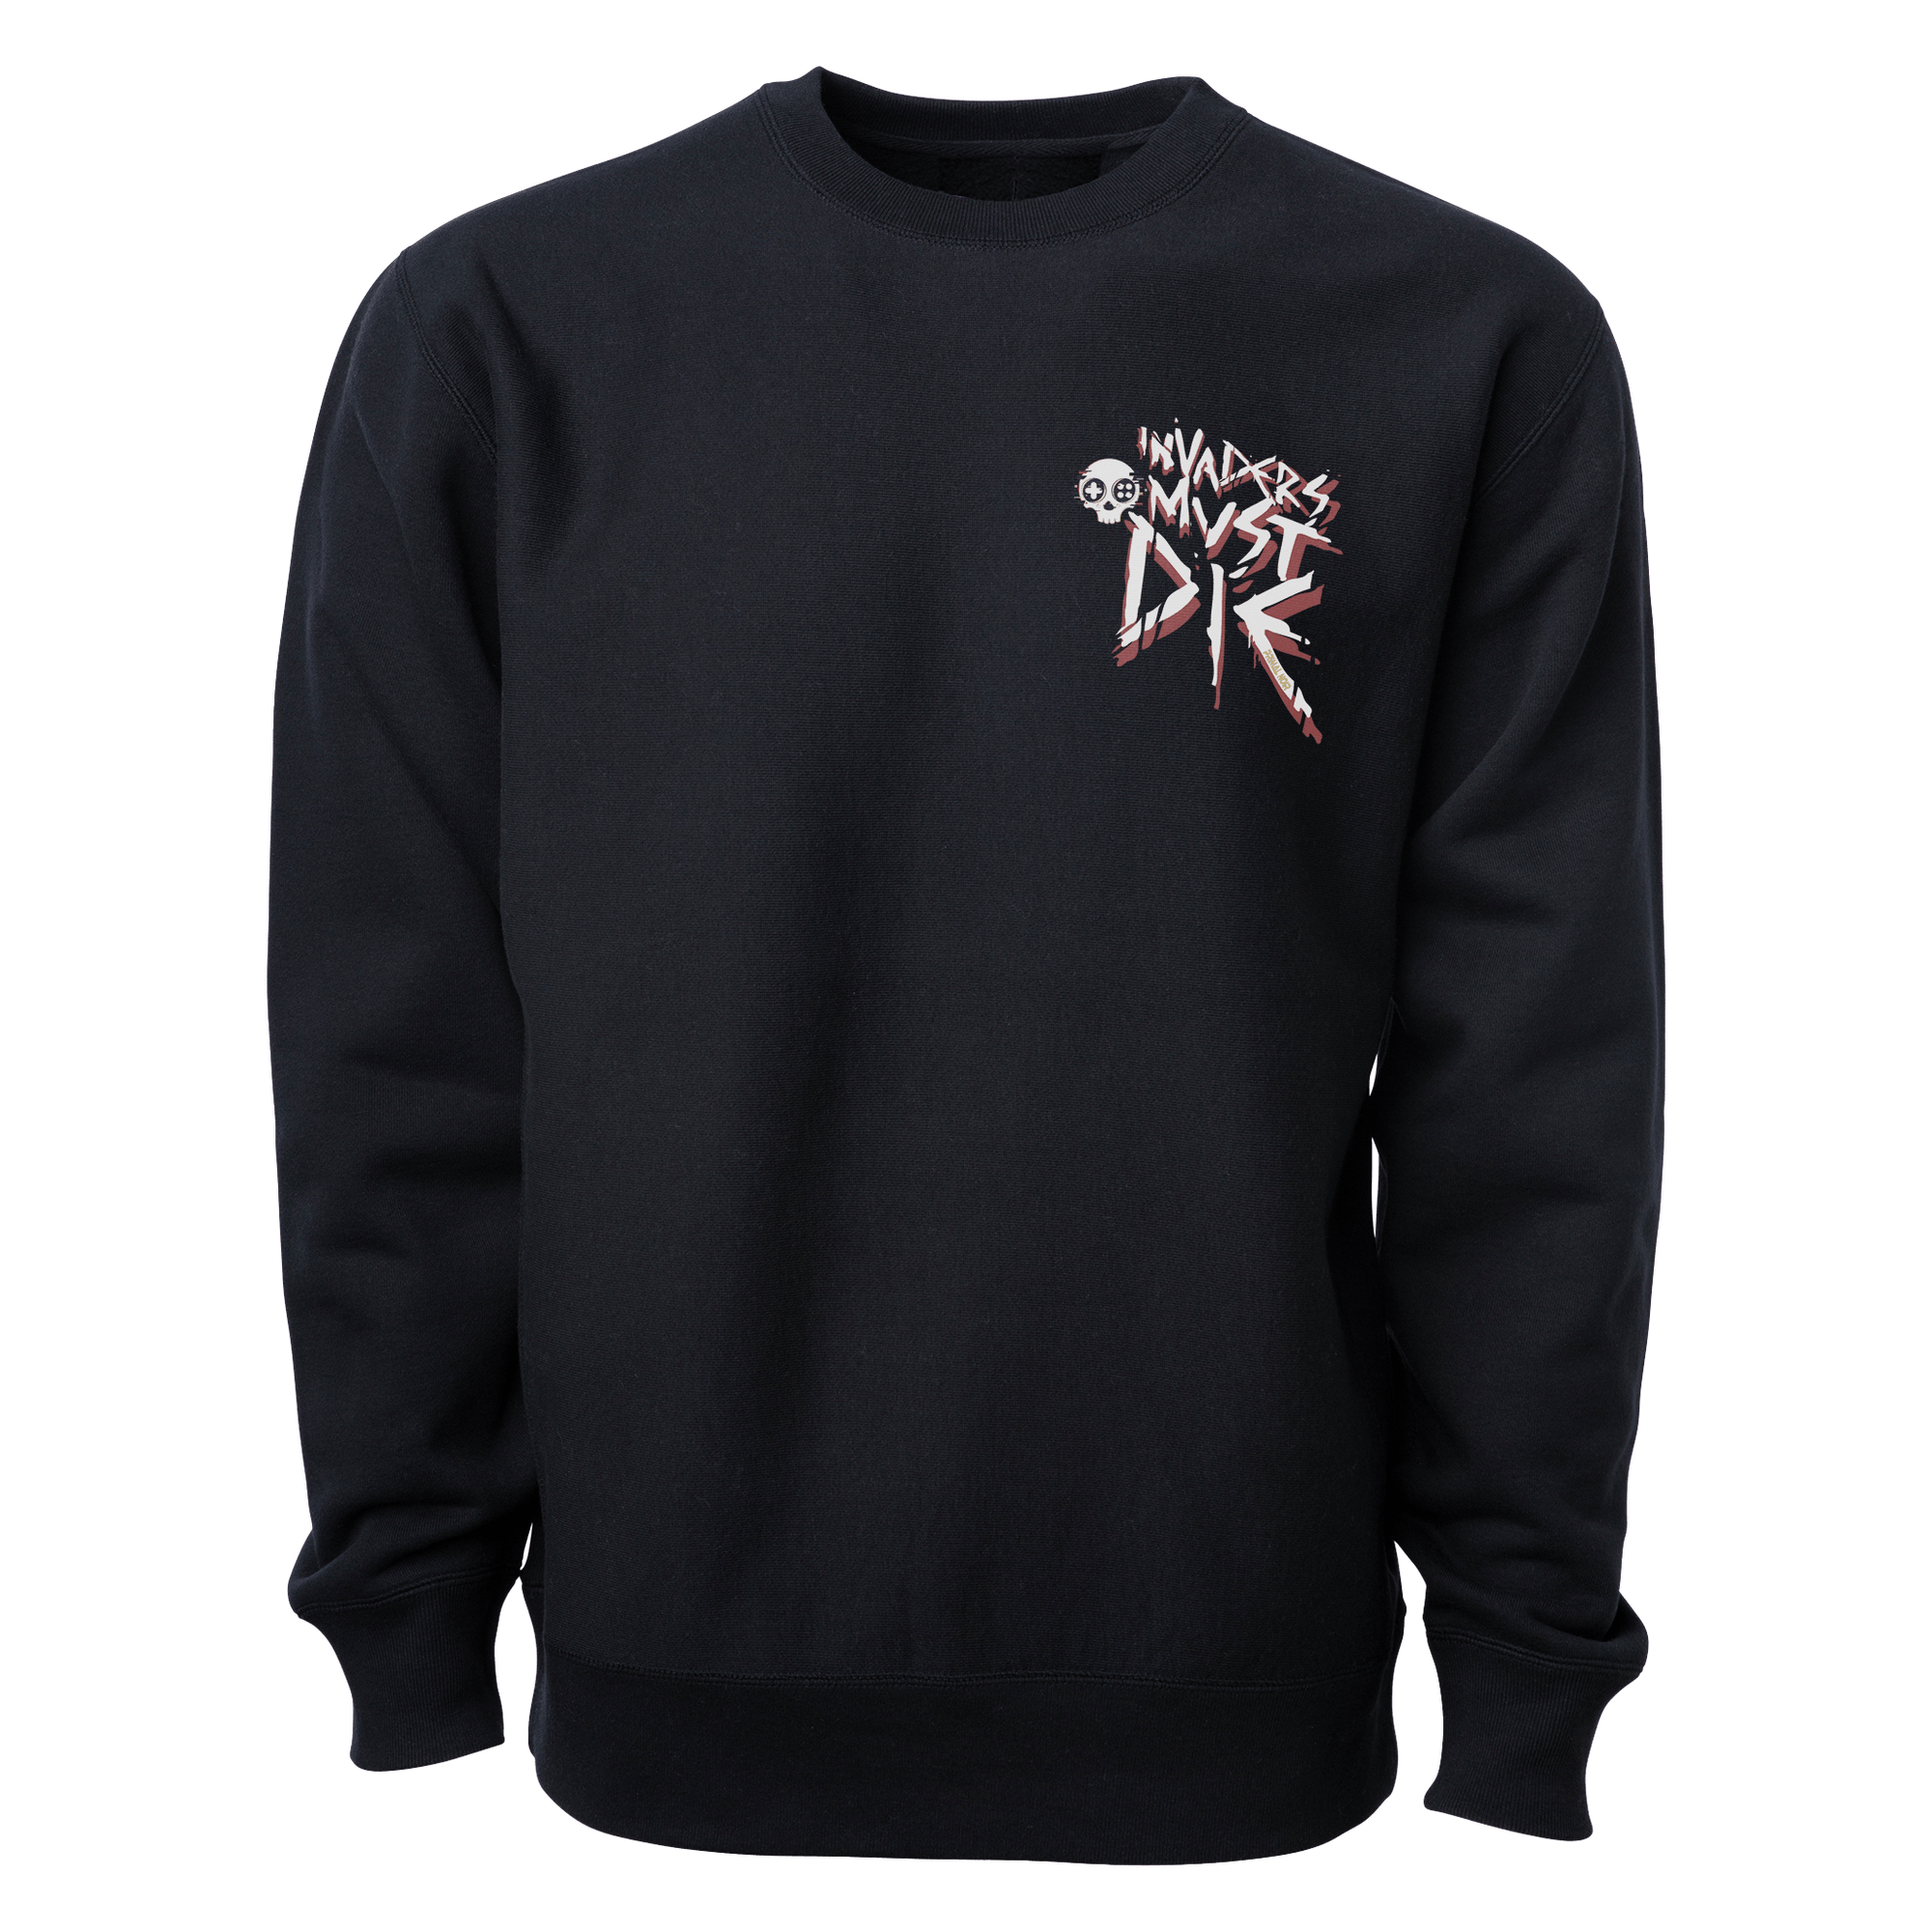 Primal Noir Anime Sweatshirts Black / S Bleach: Yukio Invaders Must Die Anime Sweatshirt